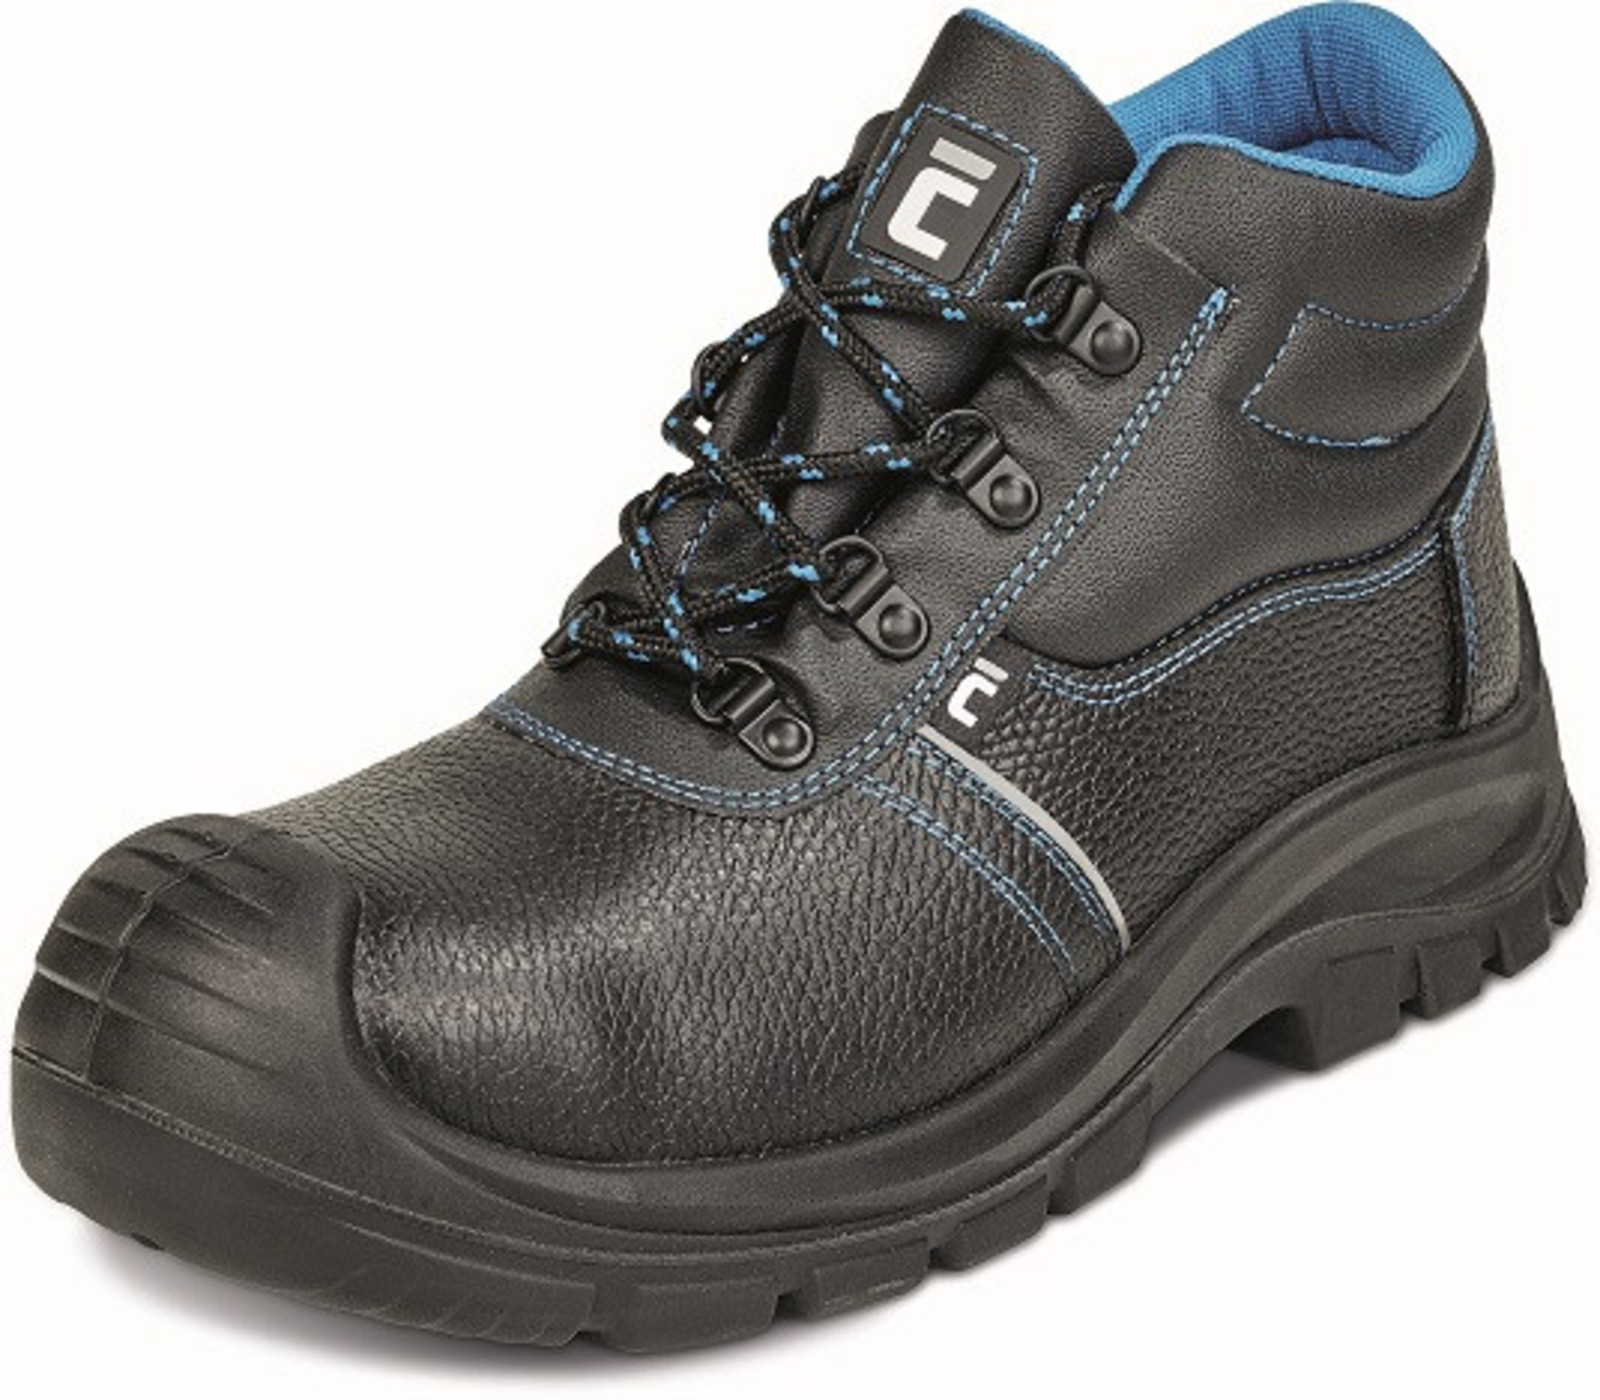 Bezpečnostná obuv Raven XT S1P - veľkosť: 38, farba: čierna